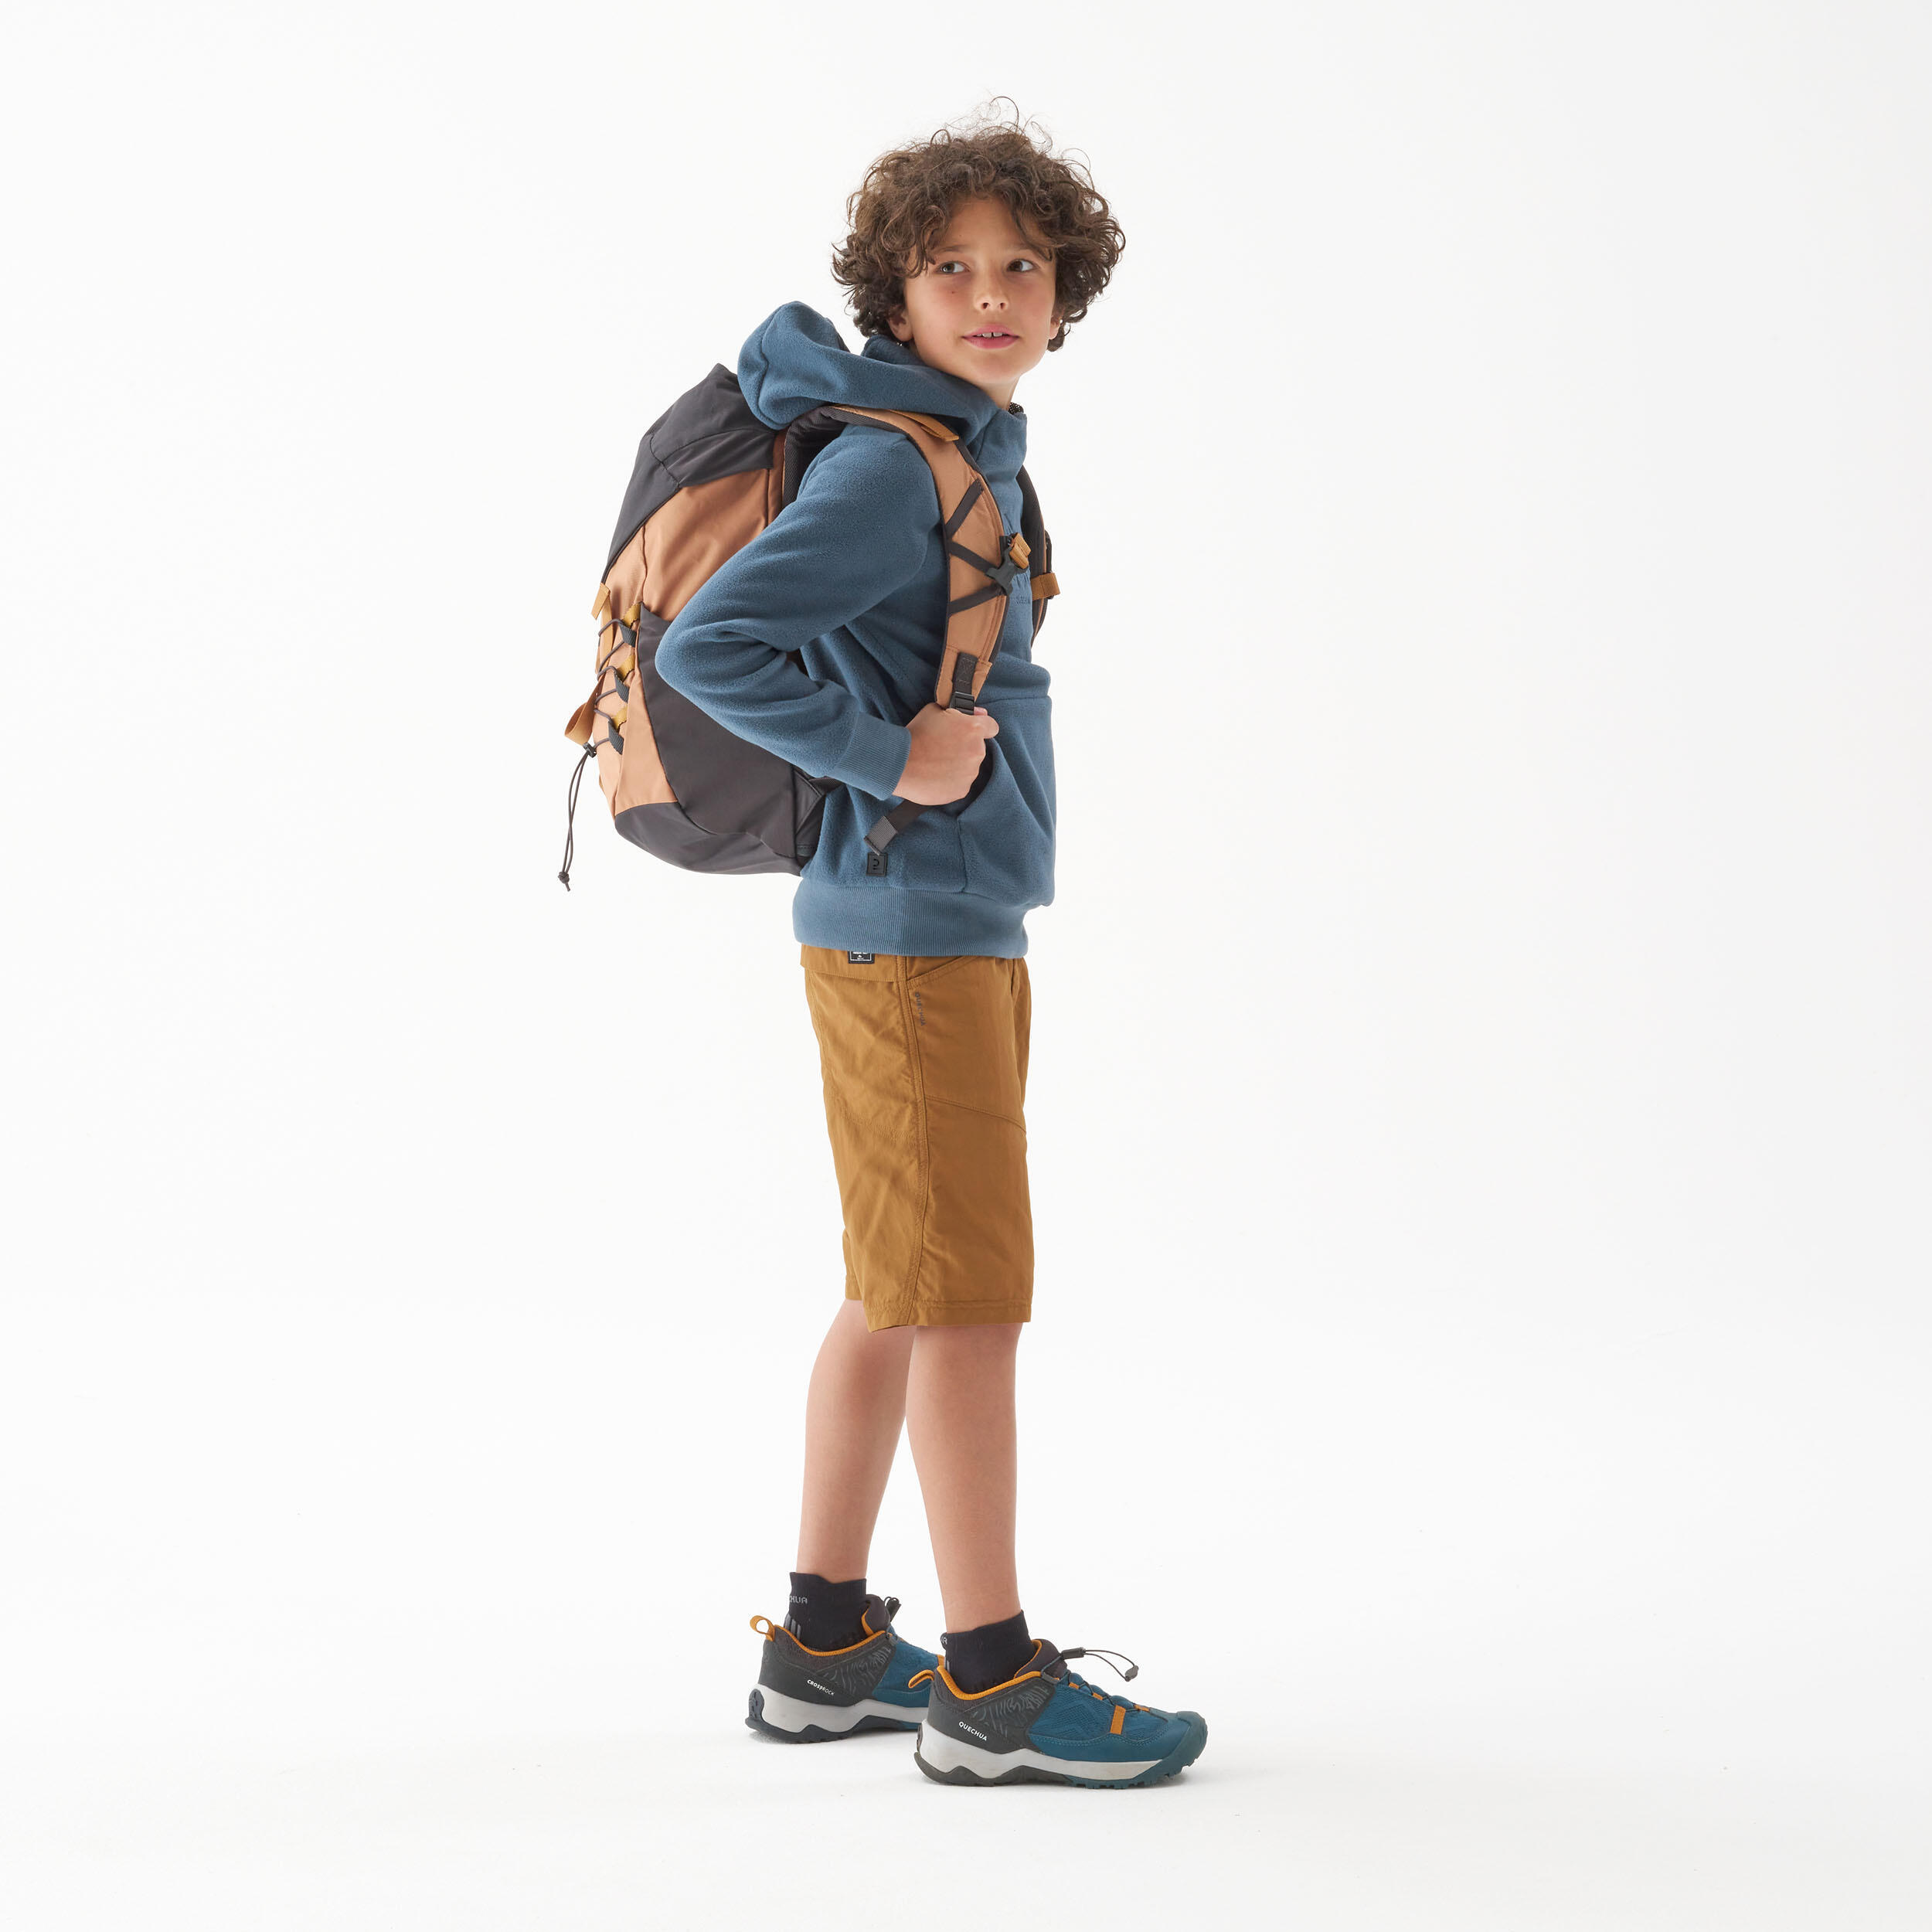 Child's hiking shorts - MH500 dark brown - 7-15 years 2/6